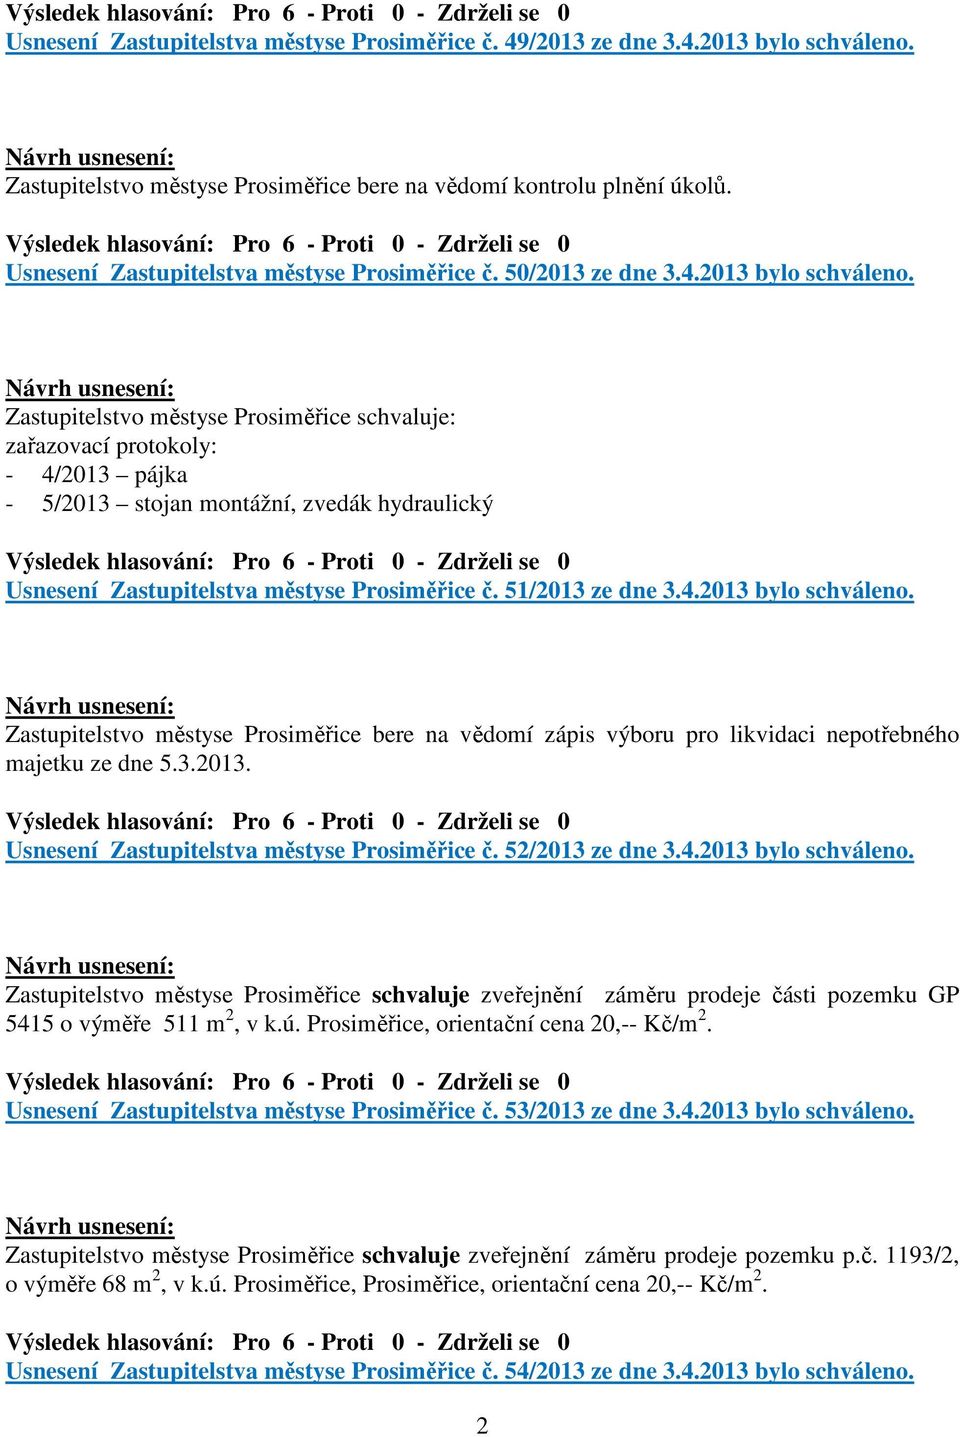 Zastupitelstvo městyse Prosiměřice schvaluje: zařazovací protokoly: - 4/2013 pájka - 5/2013 stojan montážní, zvedák hydraulický Usnesení Zastupitelstva městyse Prosiměřice č. 51/2013 ze dne 3.4.2013 bylo schváleno.